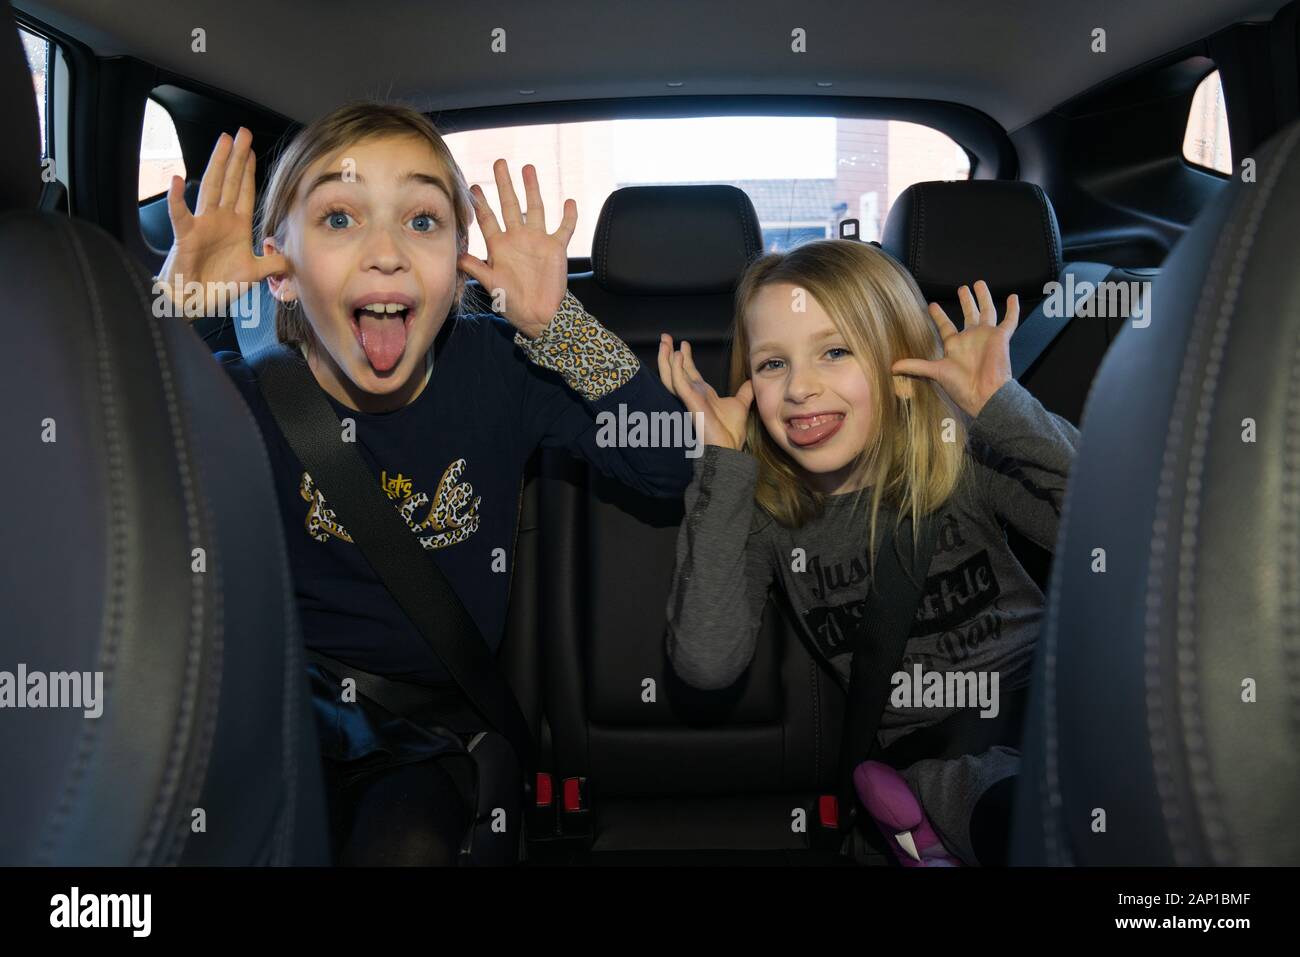 Zwei Kinder auf dem Rücksitz eines Autos, die lustige Gesichter machen  Stockfotografie - Alamy